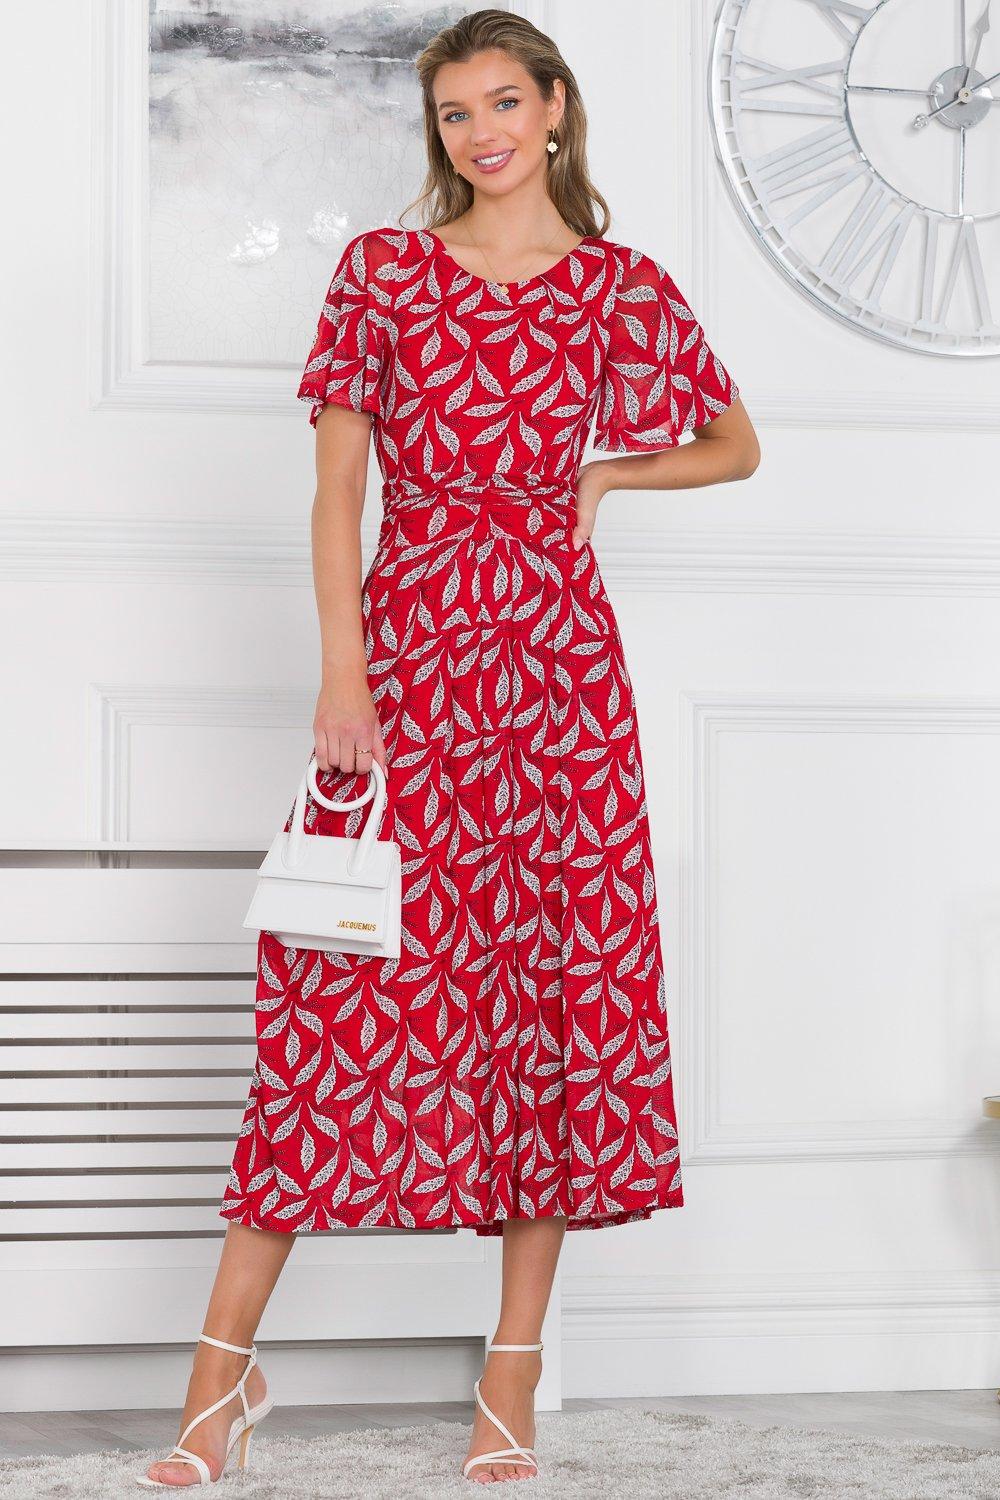 Сетчатое платье макси Raylina с принтом листьев Jolie Moi, красный